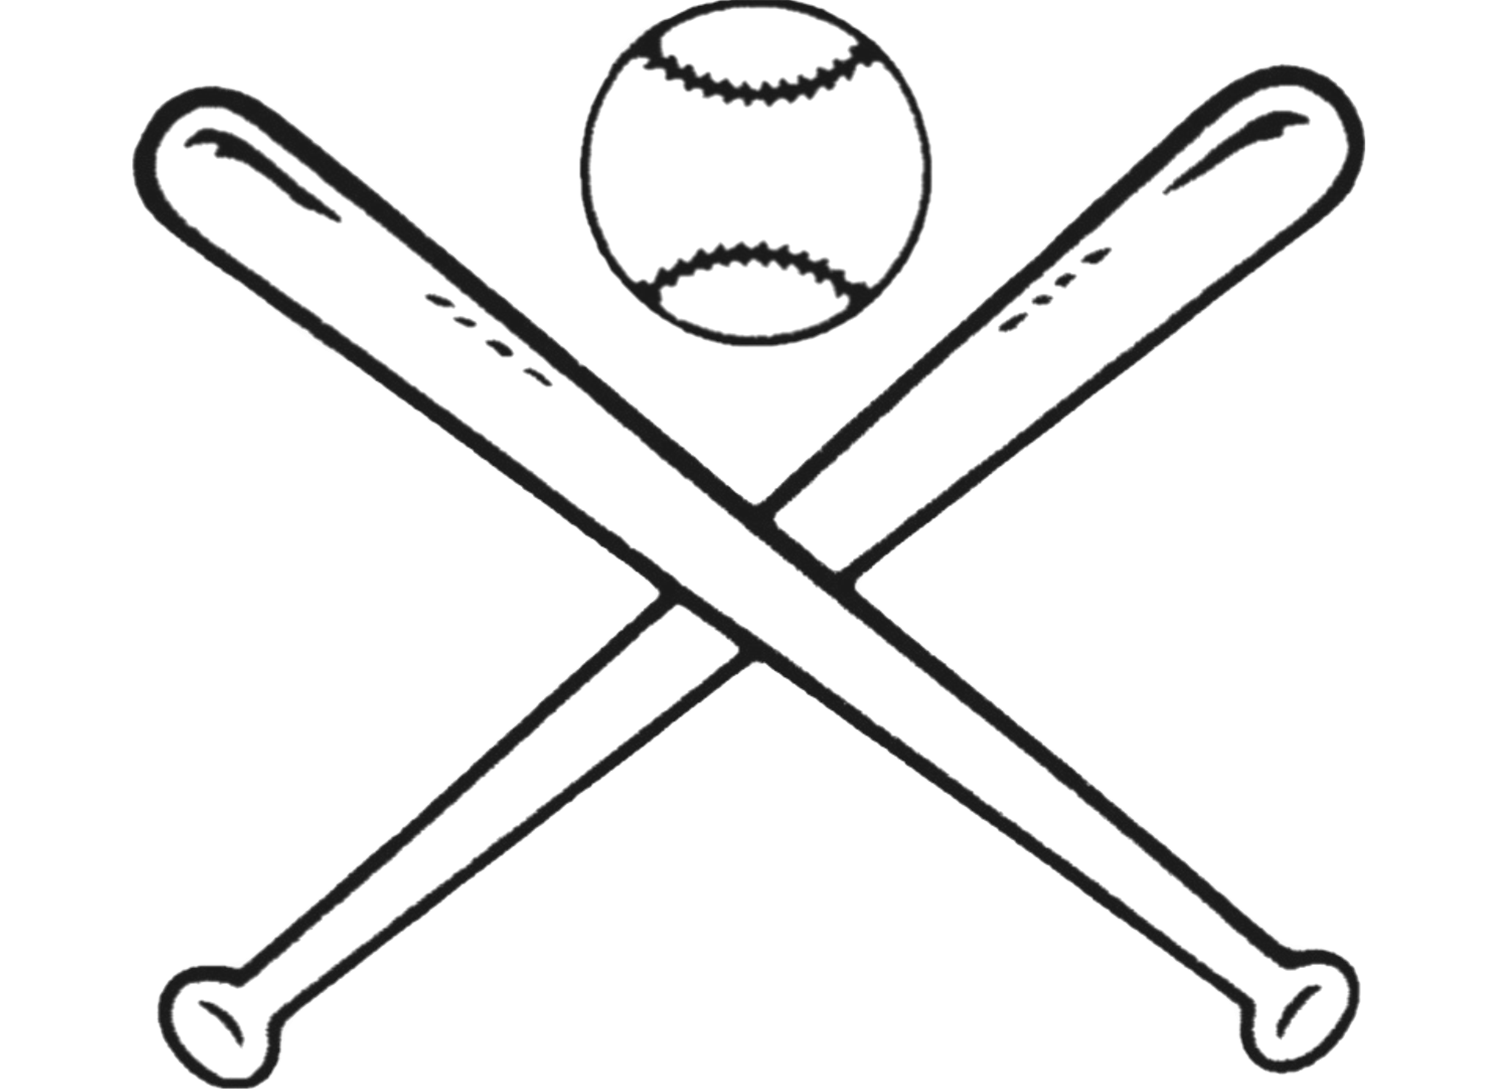 Baseball bat baseball pictures image graphics andments clip 